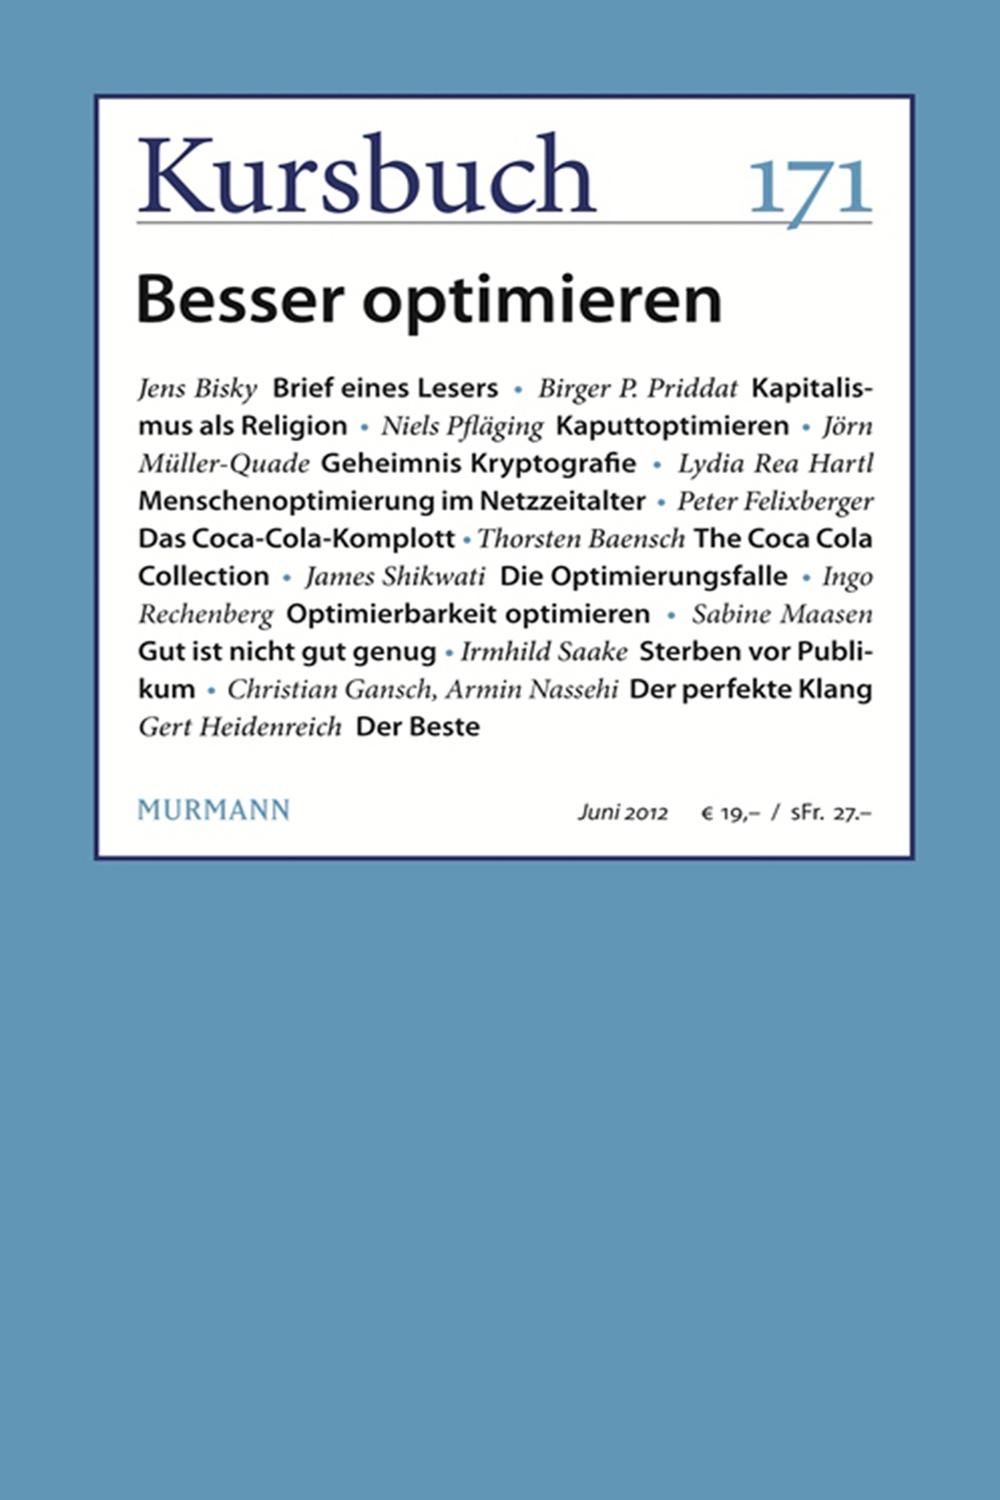 Kursbuch 171 - Armin Nassehi, Peter Felixberger